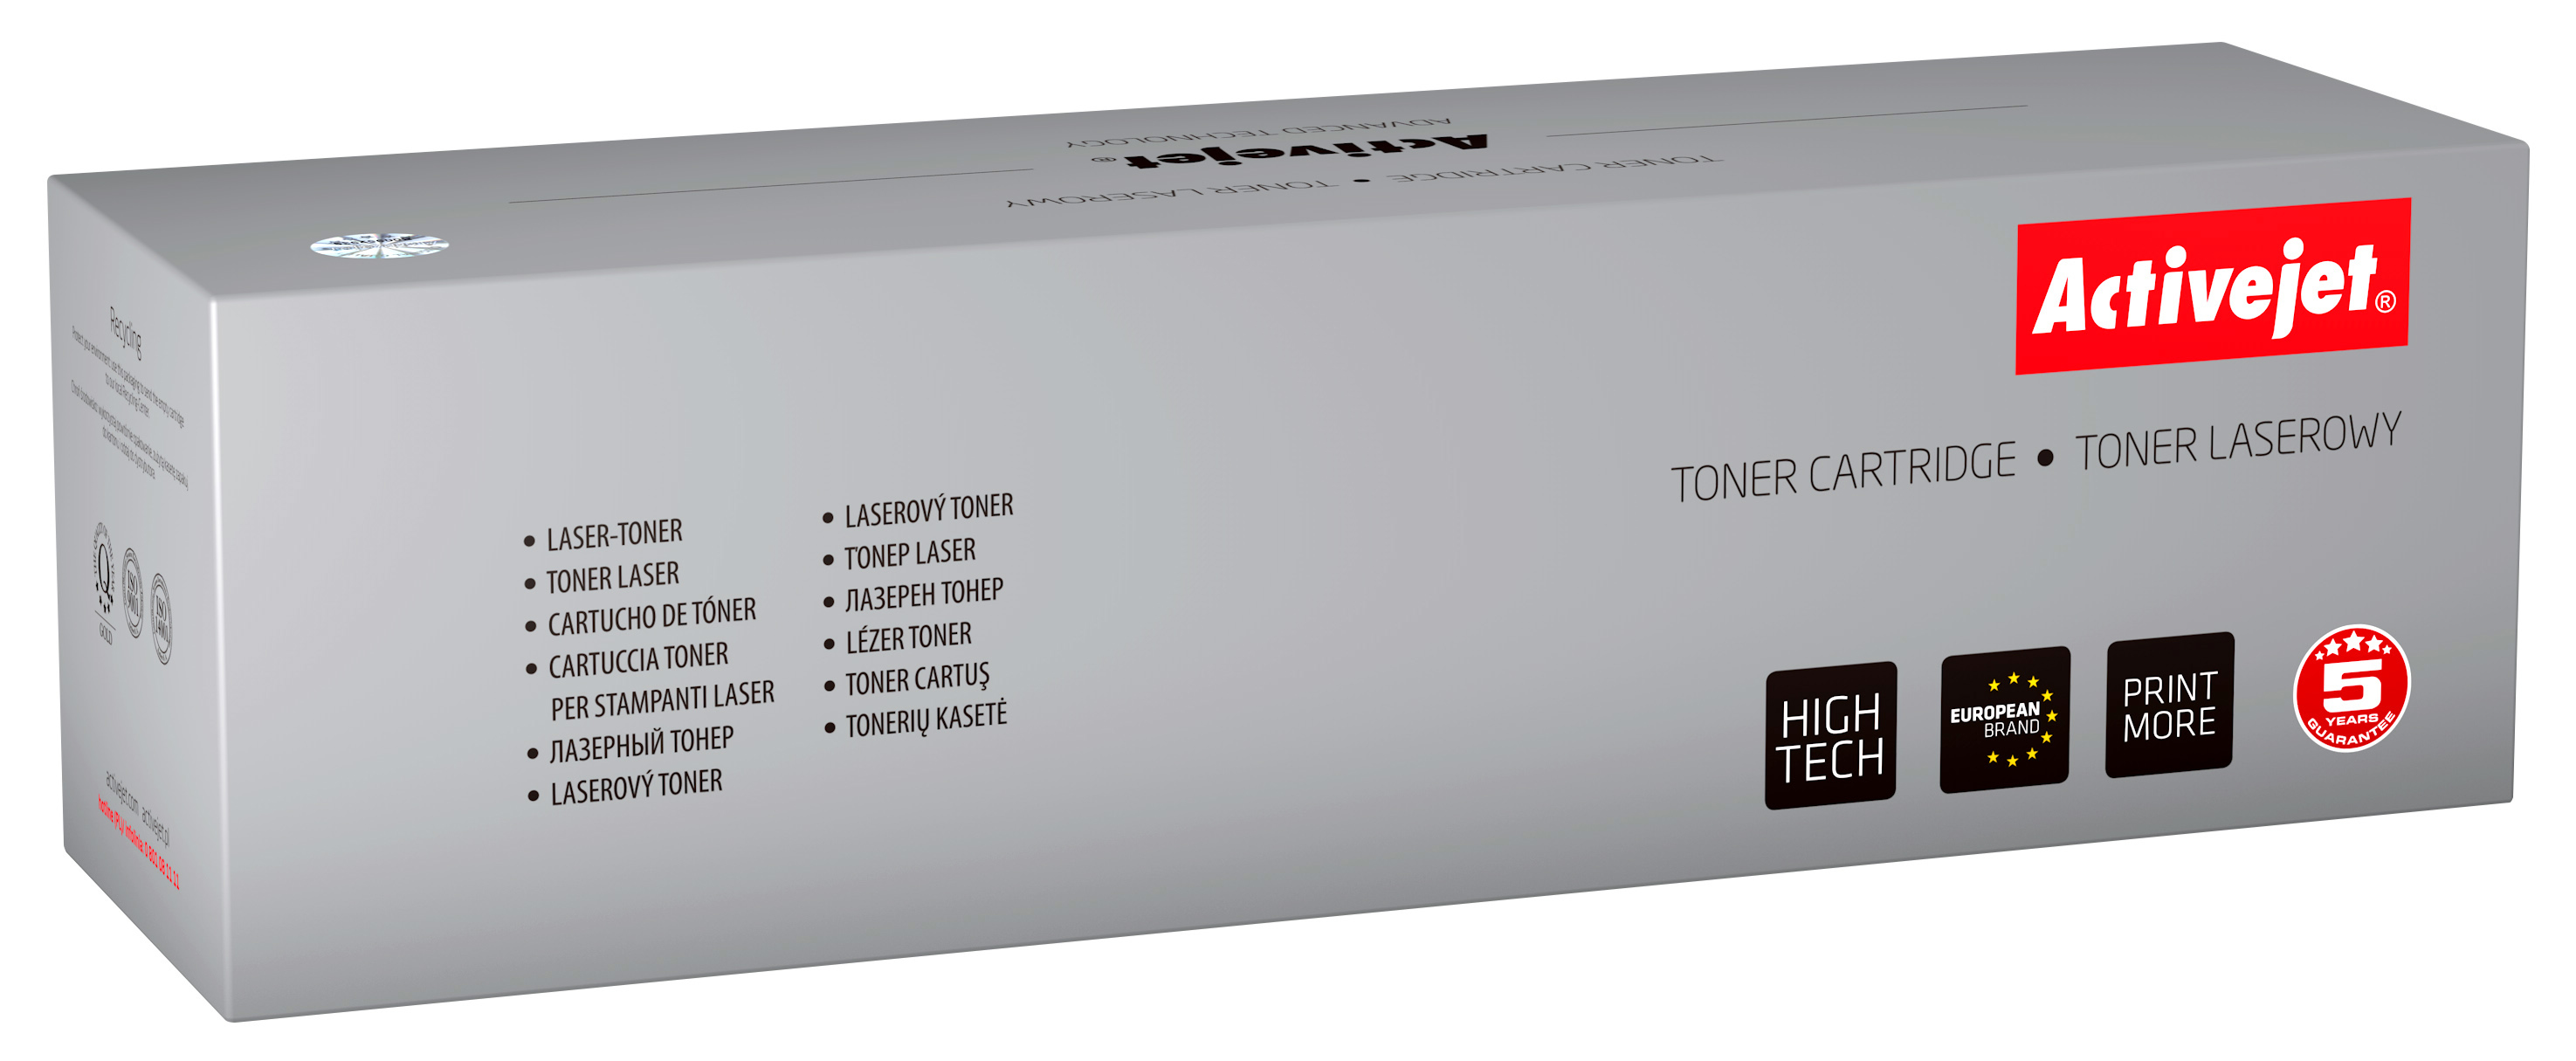 Toner Activejet ATS-Y404AN do drukarki Samsung, Zamiennik Samsung CLT-Y404S;  Premium;  1000 stron;  żółty.